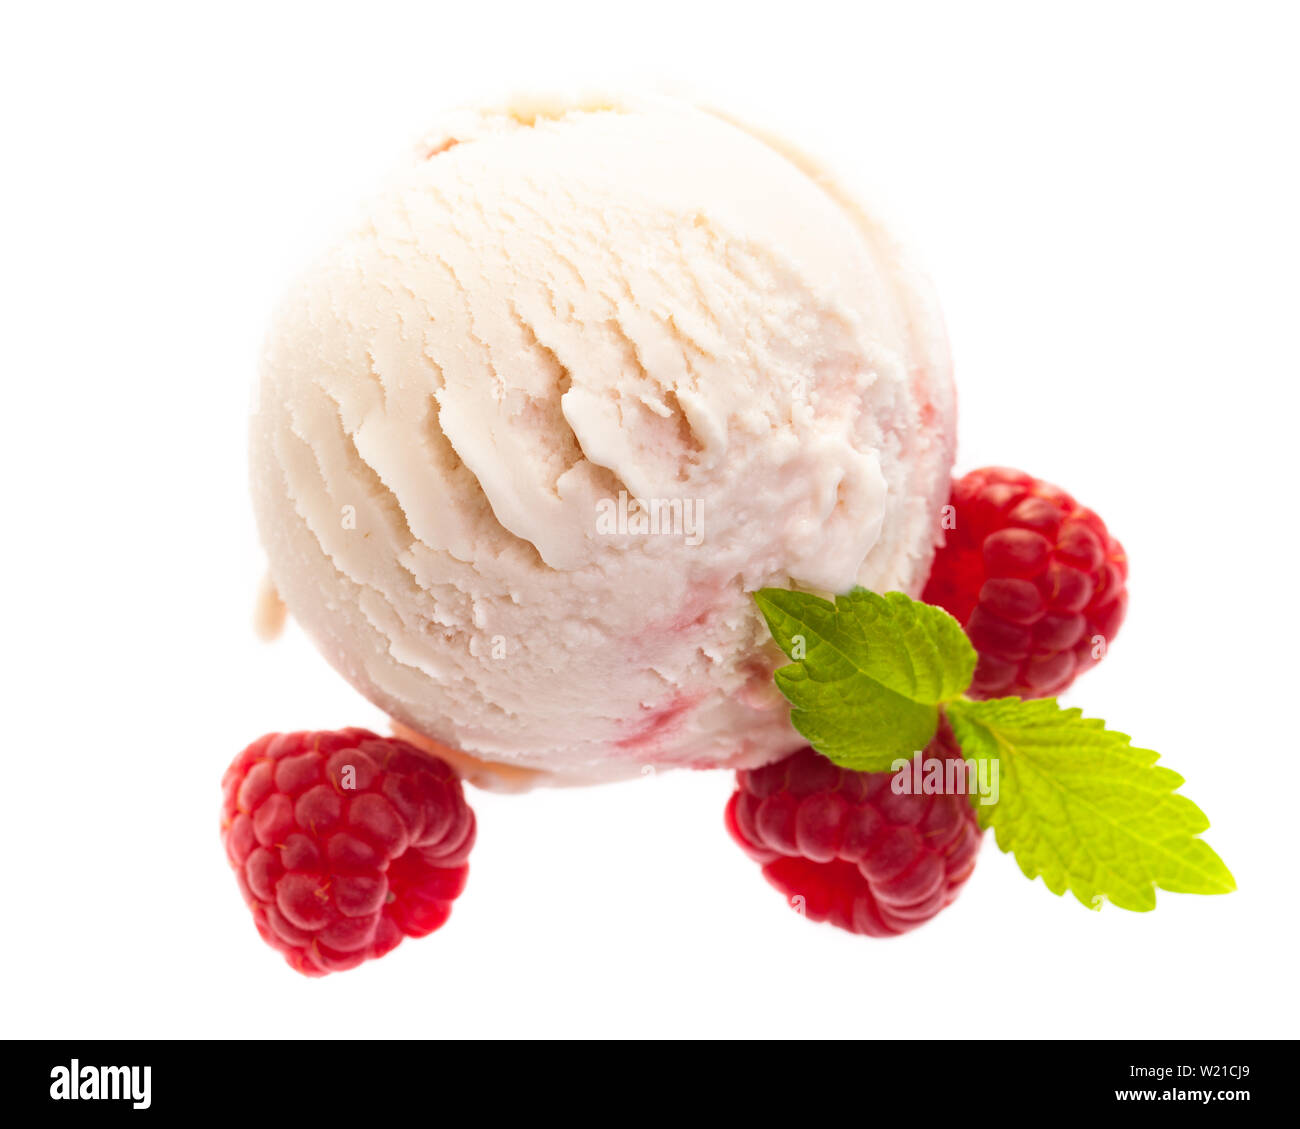 Un seul yaourt framboise - crème glacée aux framboises de dessus isolé sur fond blanc Banque D'Images